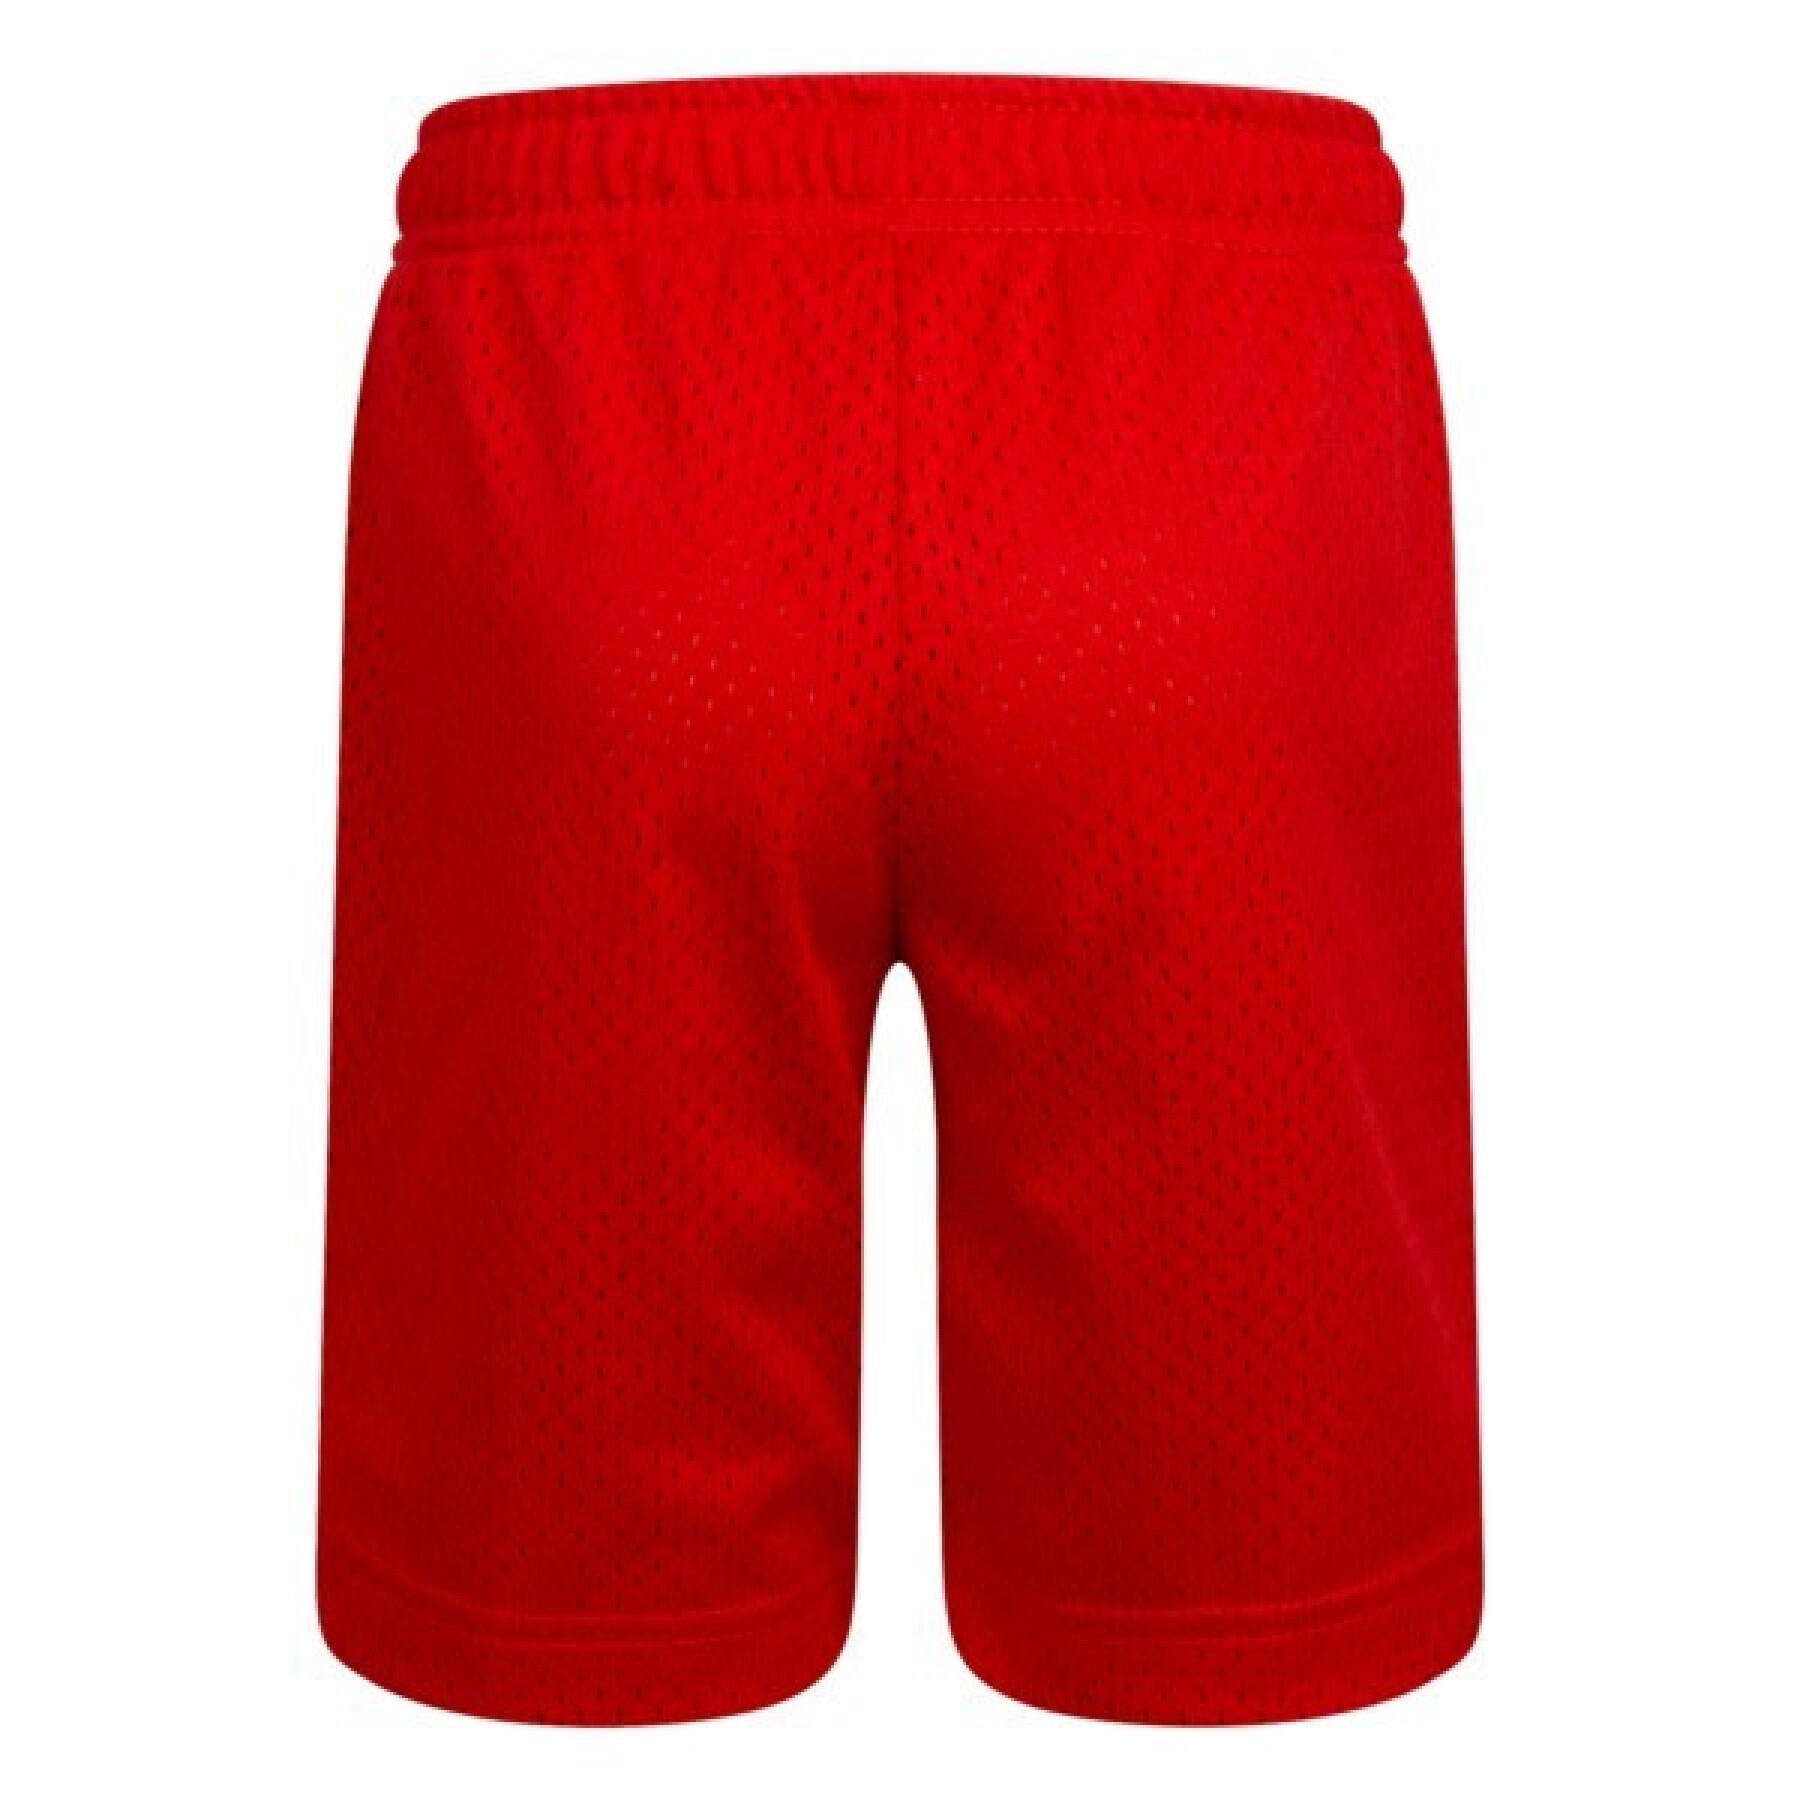 Pantalón corto para niños Nike Essential Mesh